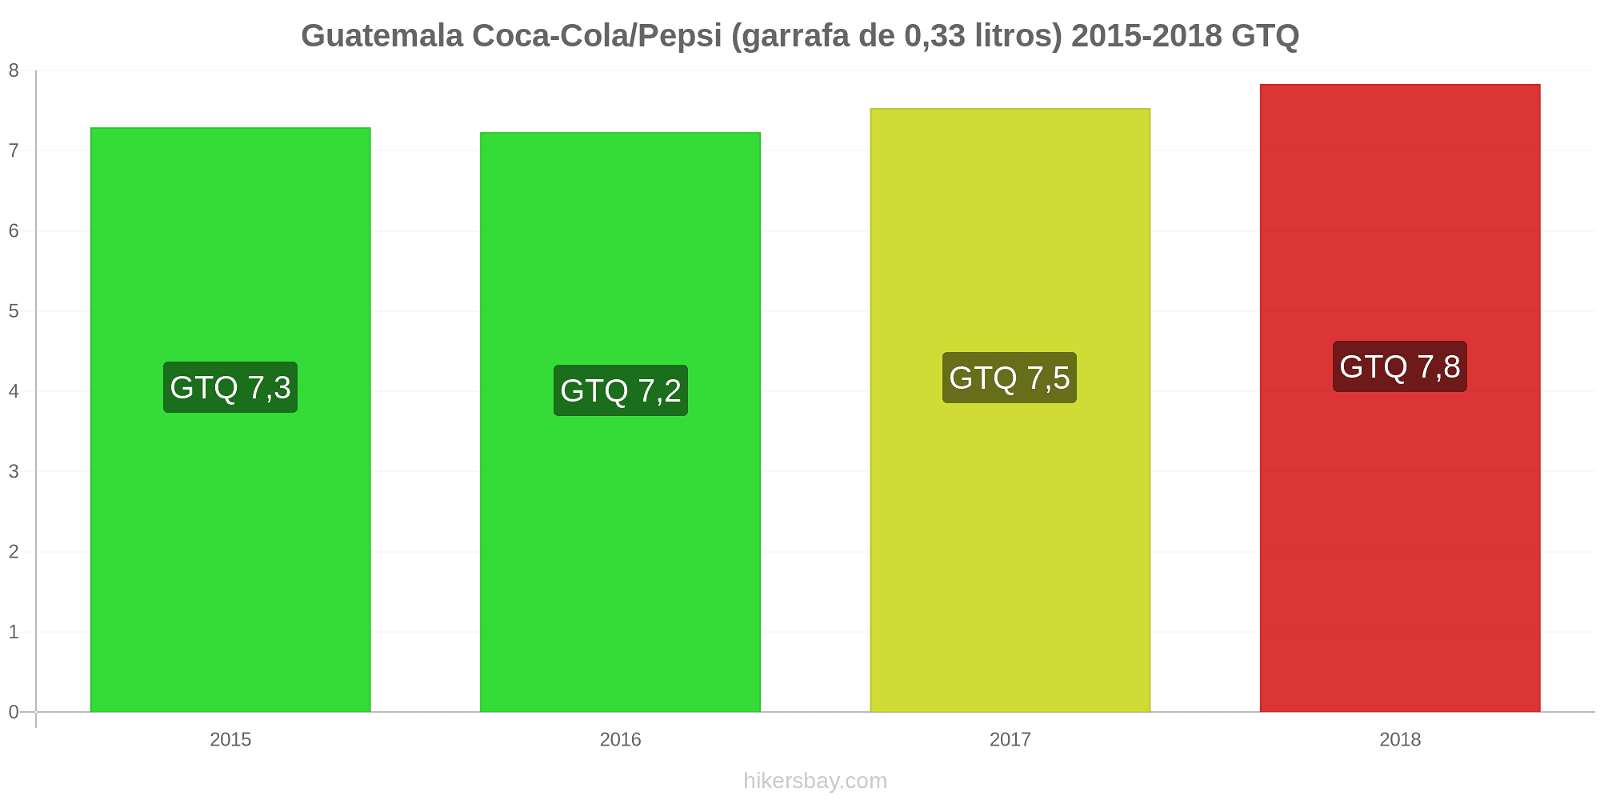 Guatemala mudanças de preços Coca-Cola/Pepsi (garrafa de 0.33 litros) hikersbay.com